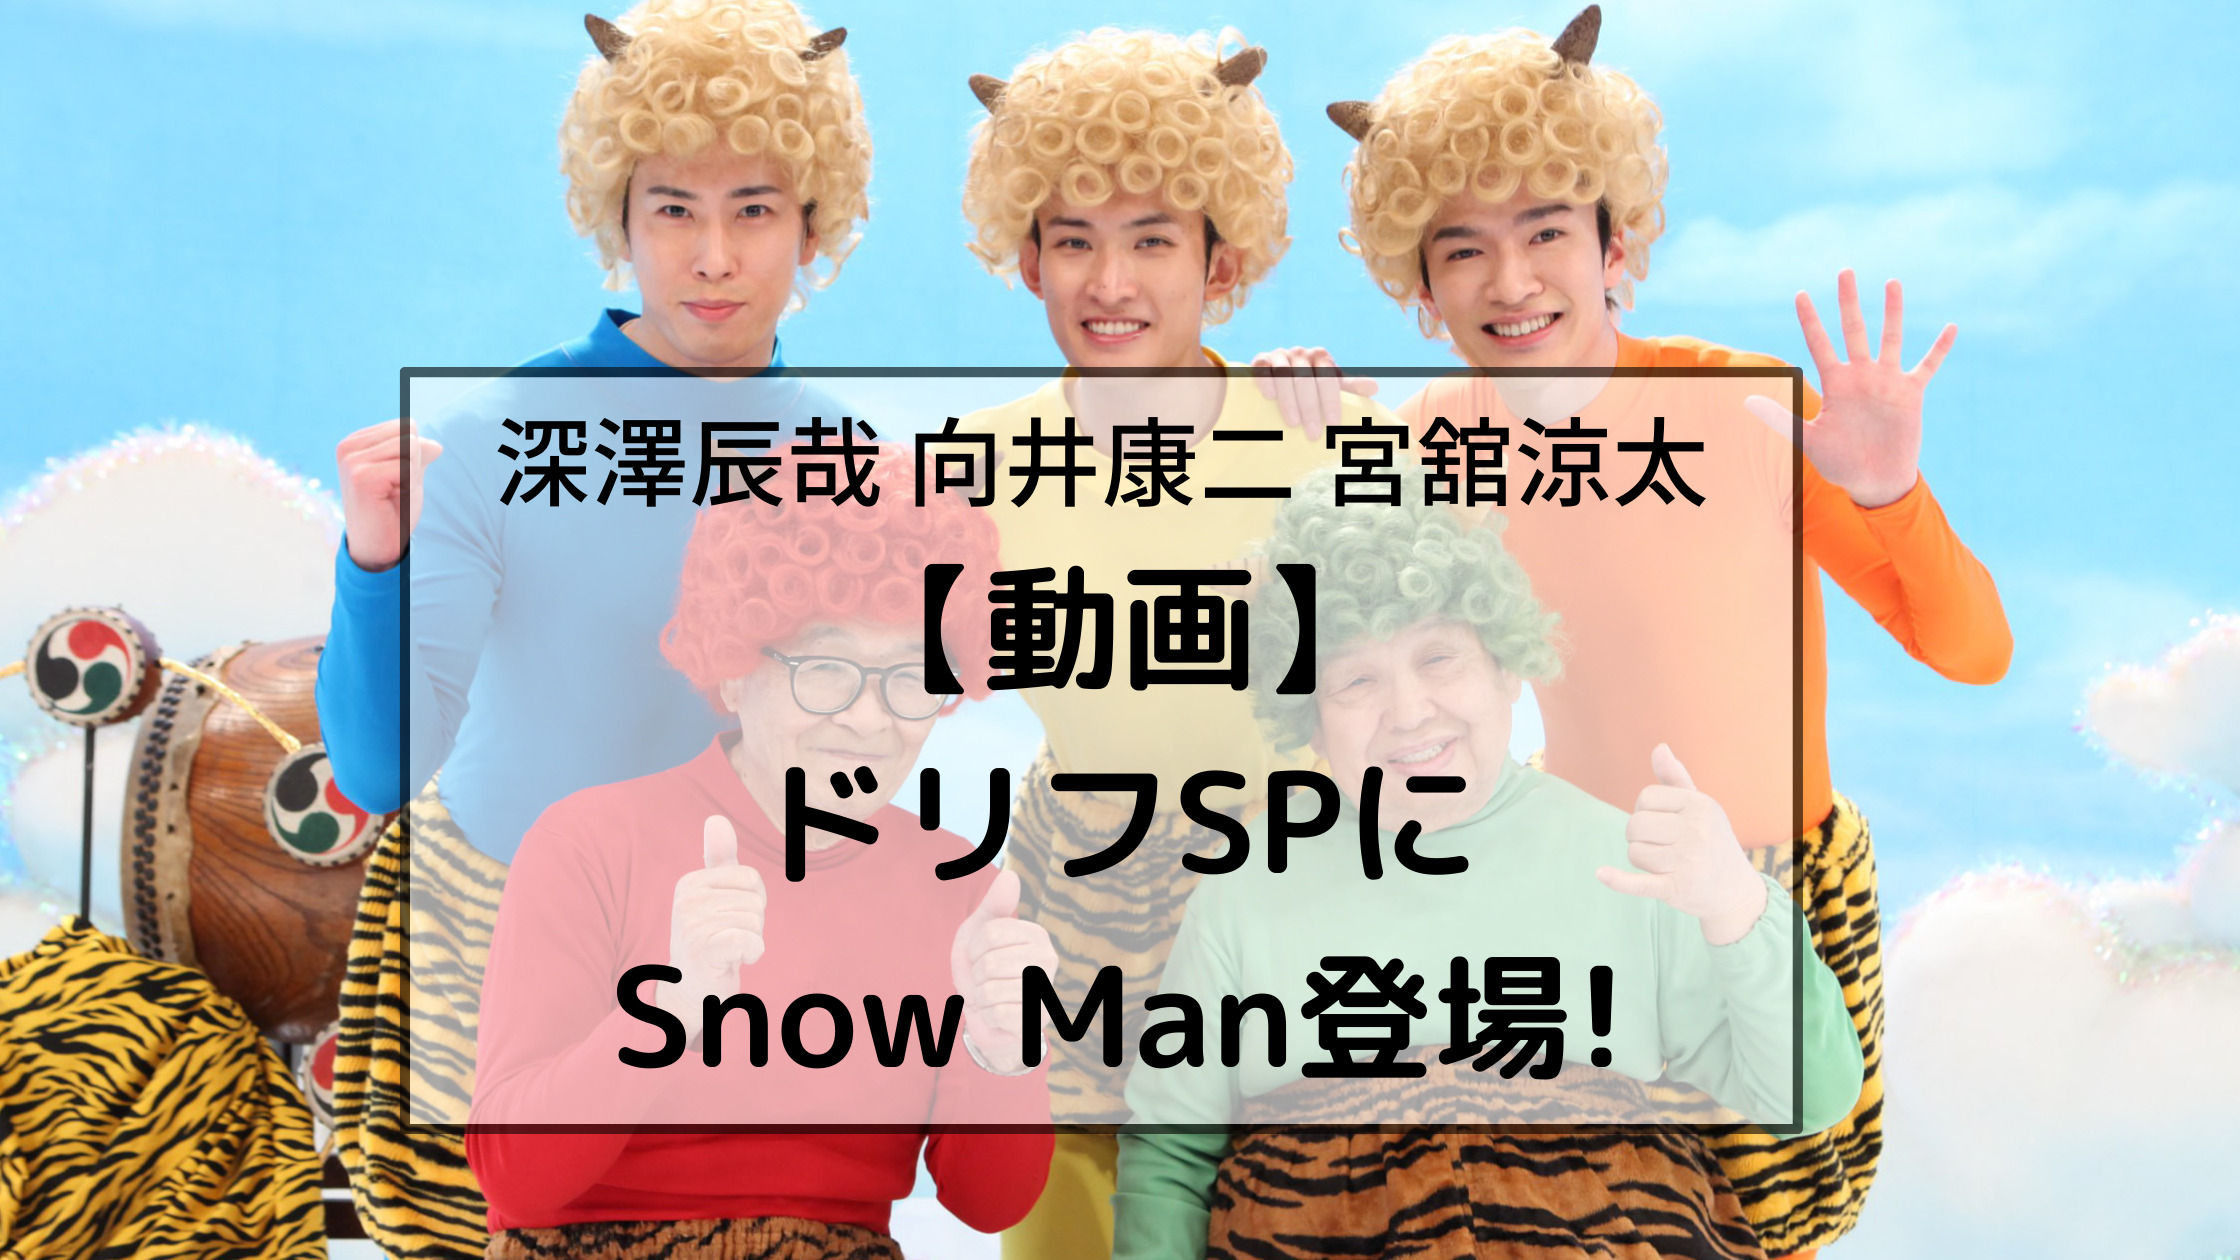 【動画】 ドリフSPに Snow Man登場!深澤辰哉 向井康二 宮舘涼太